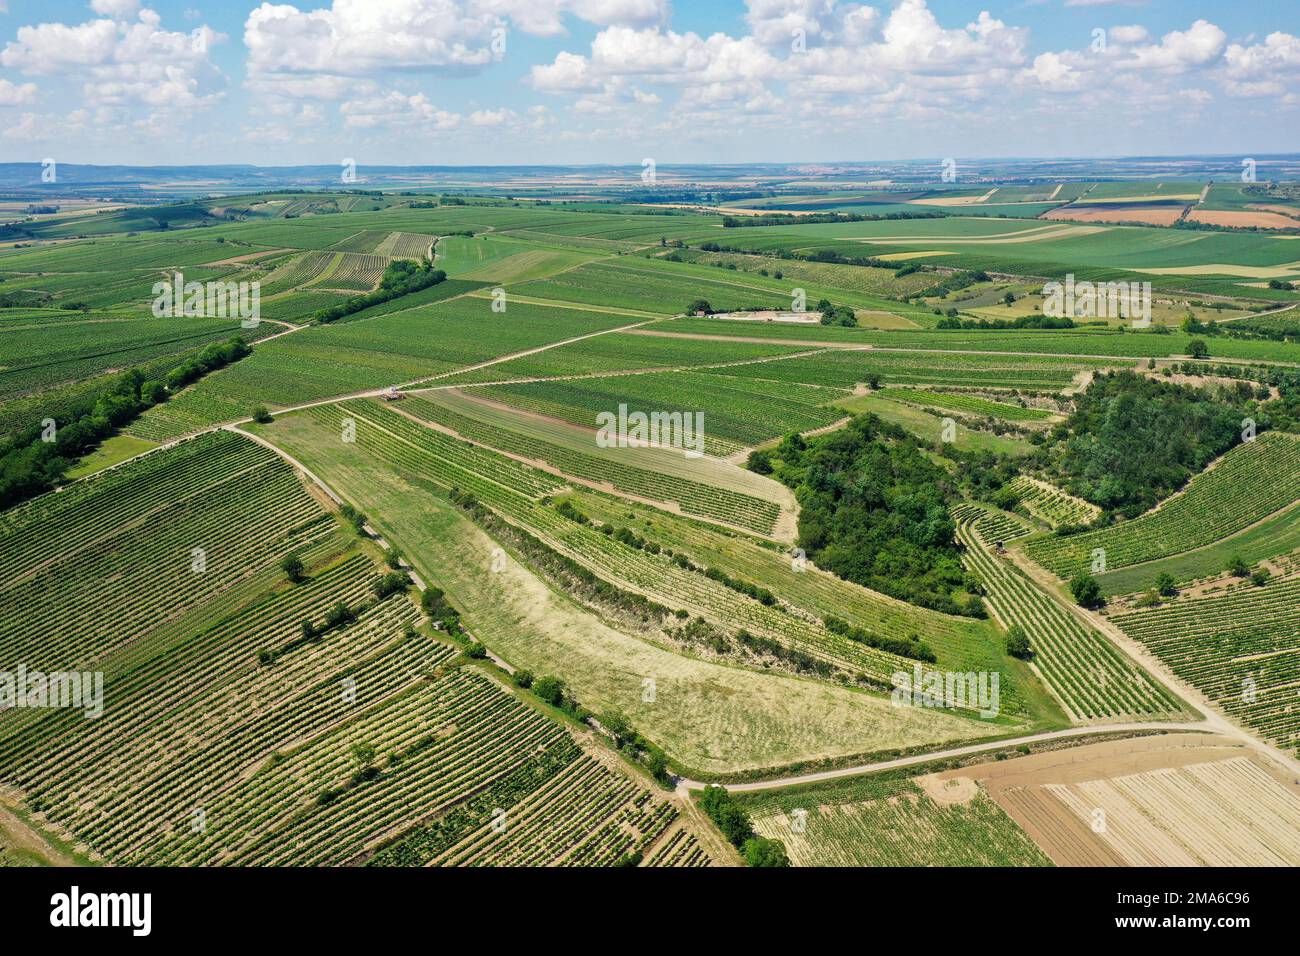 Landscape in summer with vineyards, borderland, Weinviertel, Hadres, Lower Austria, Austria Stock Photo